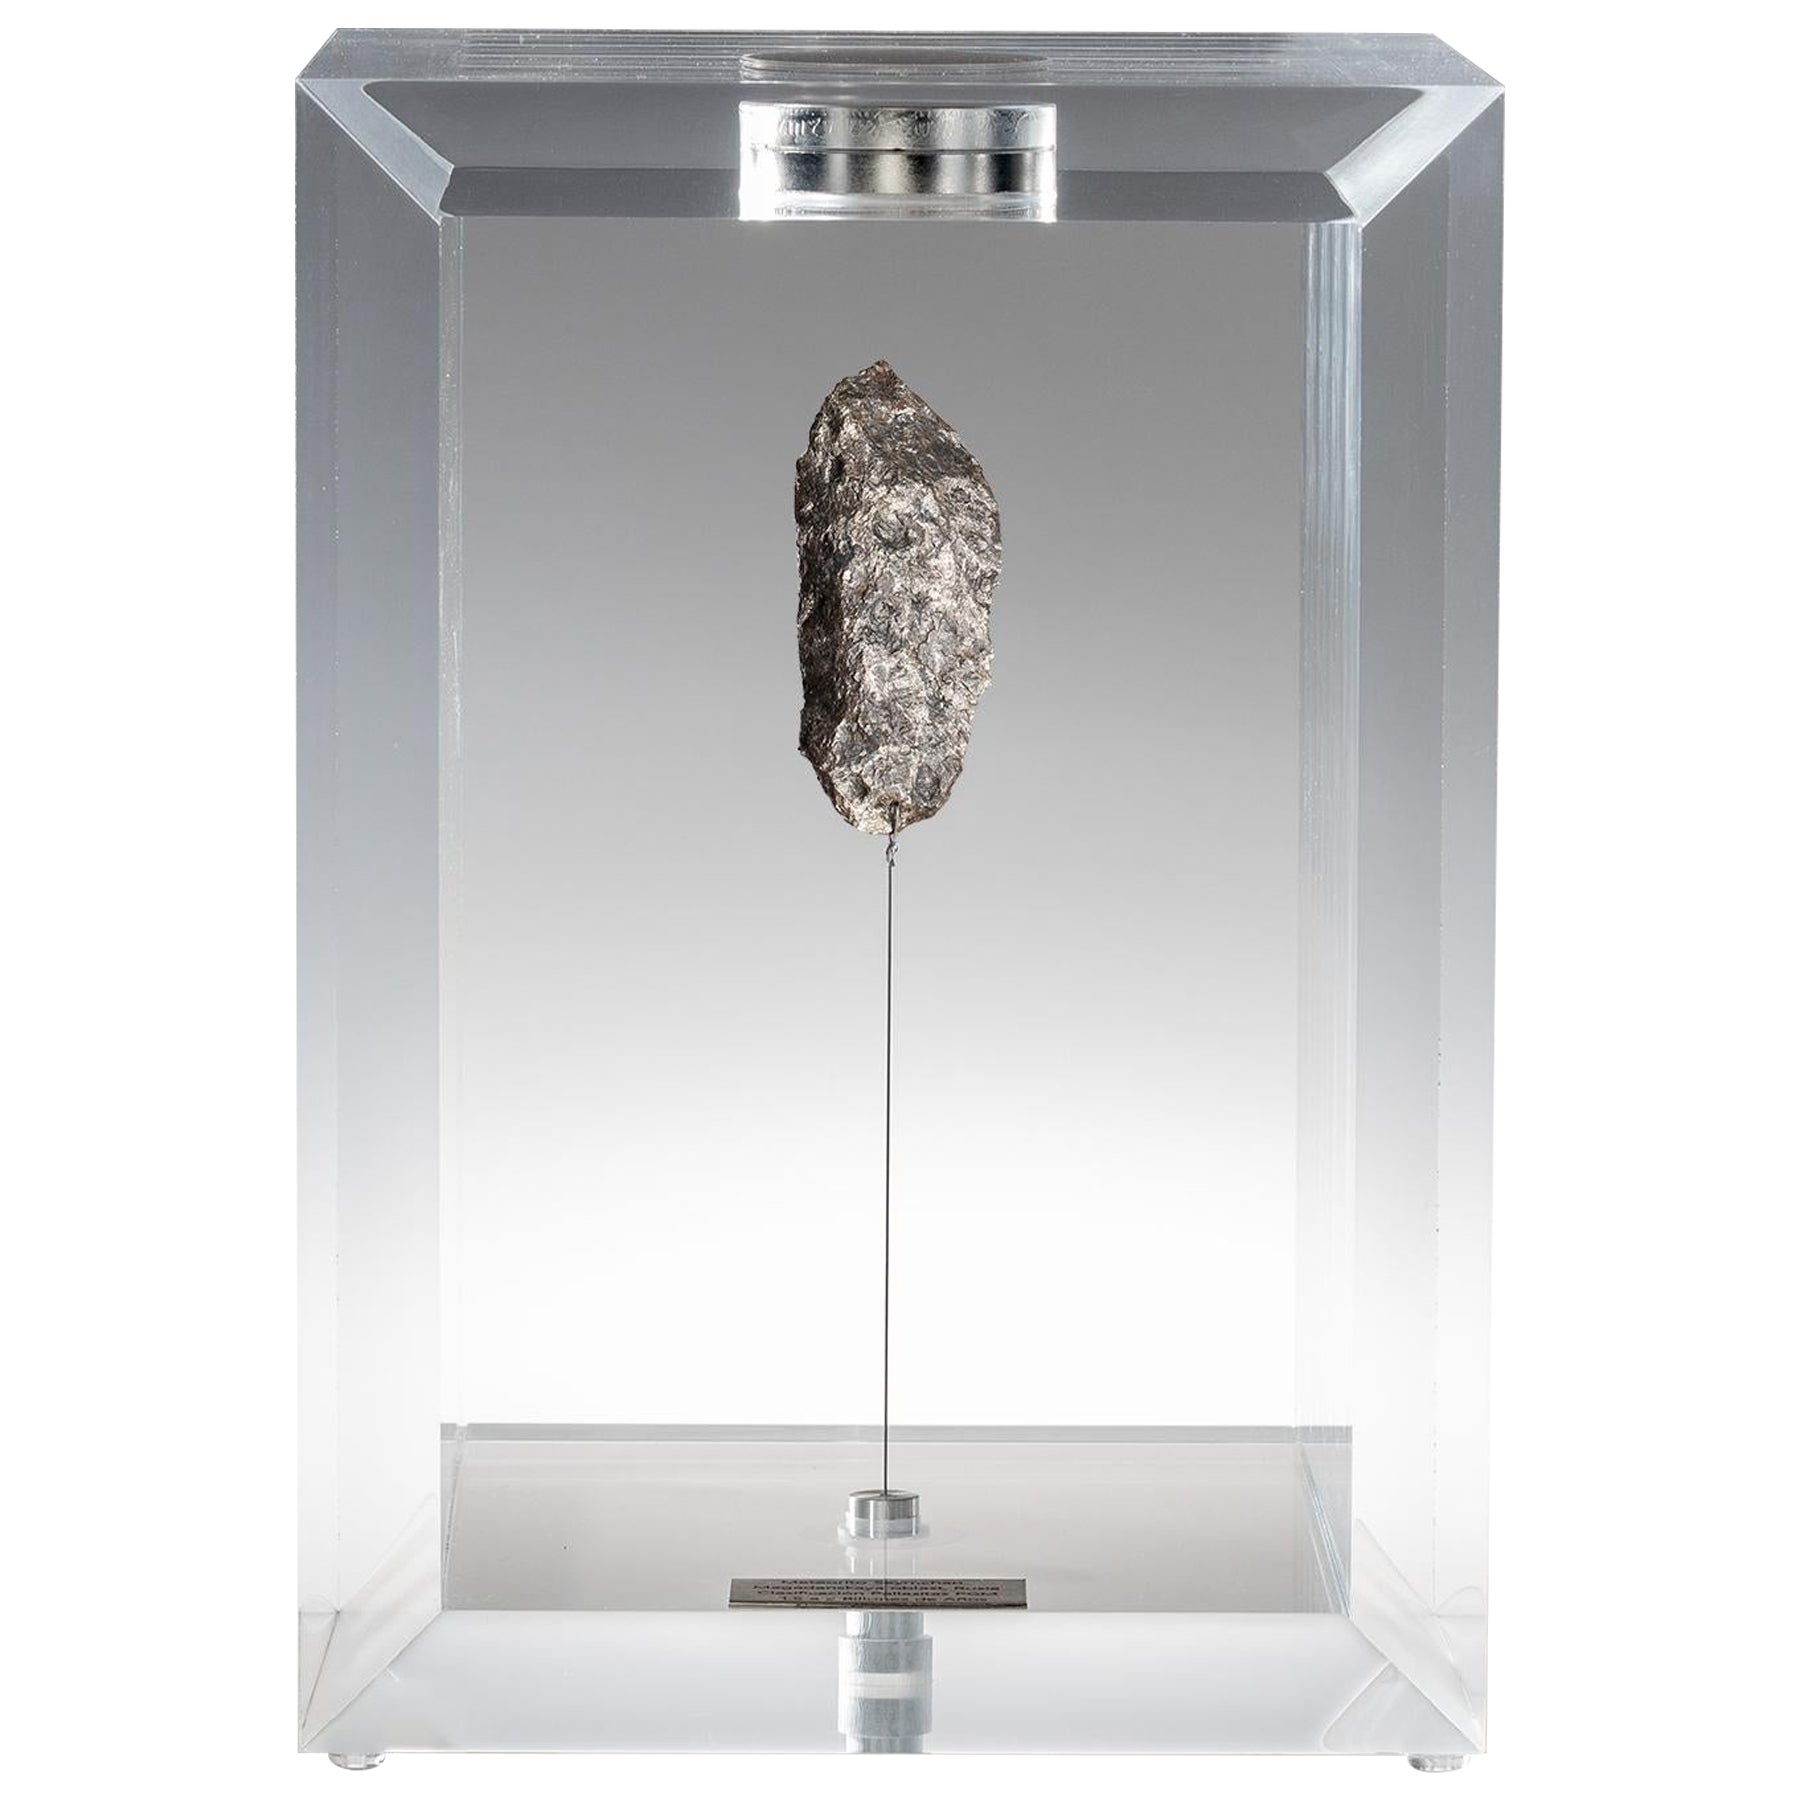 Design original, boîte spatiale Muonionalusta suédoise, météorite dans une boîte acrylique